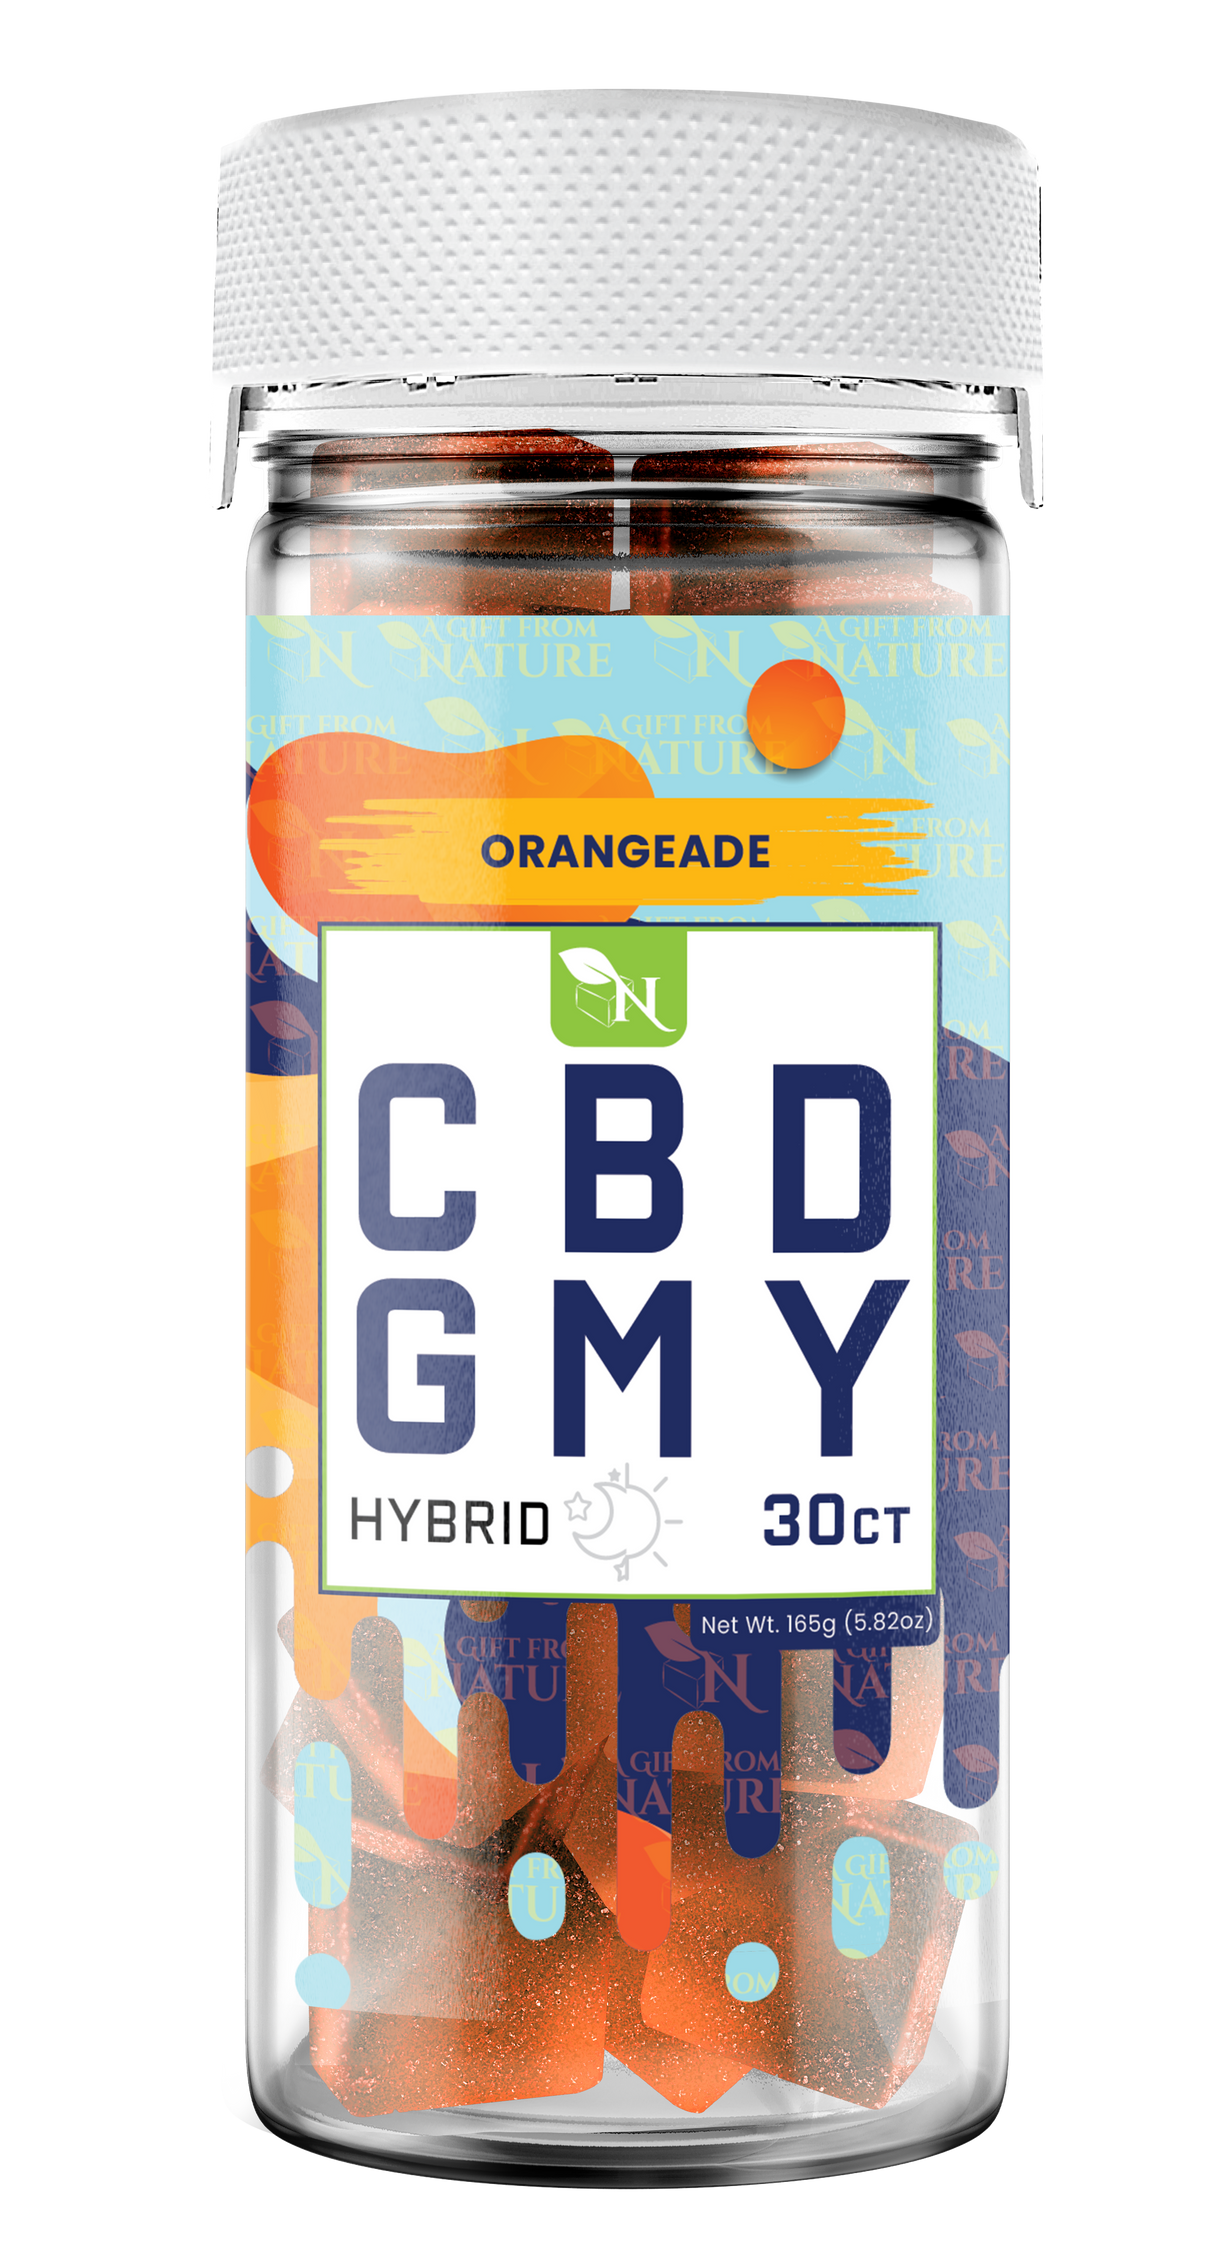 AGFN CBD Gummy: Orangeade Hybrid (1500MG)